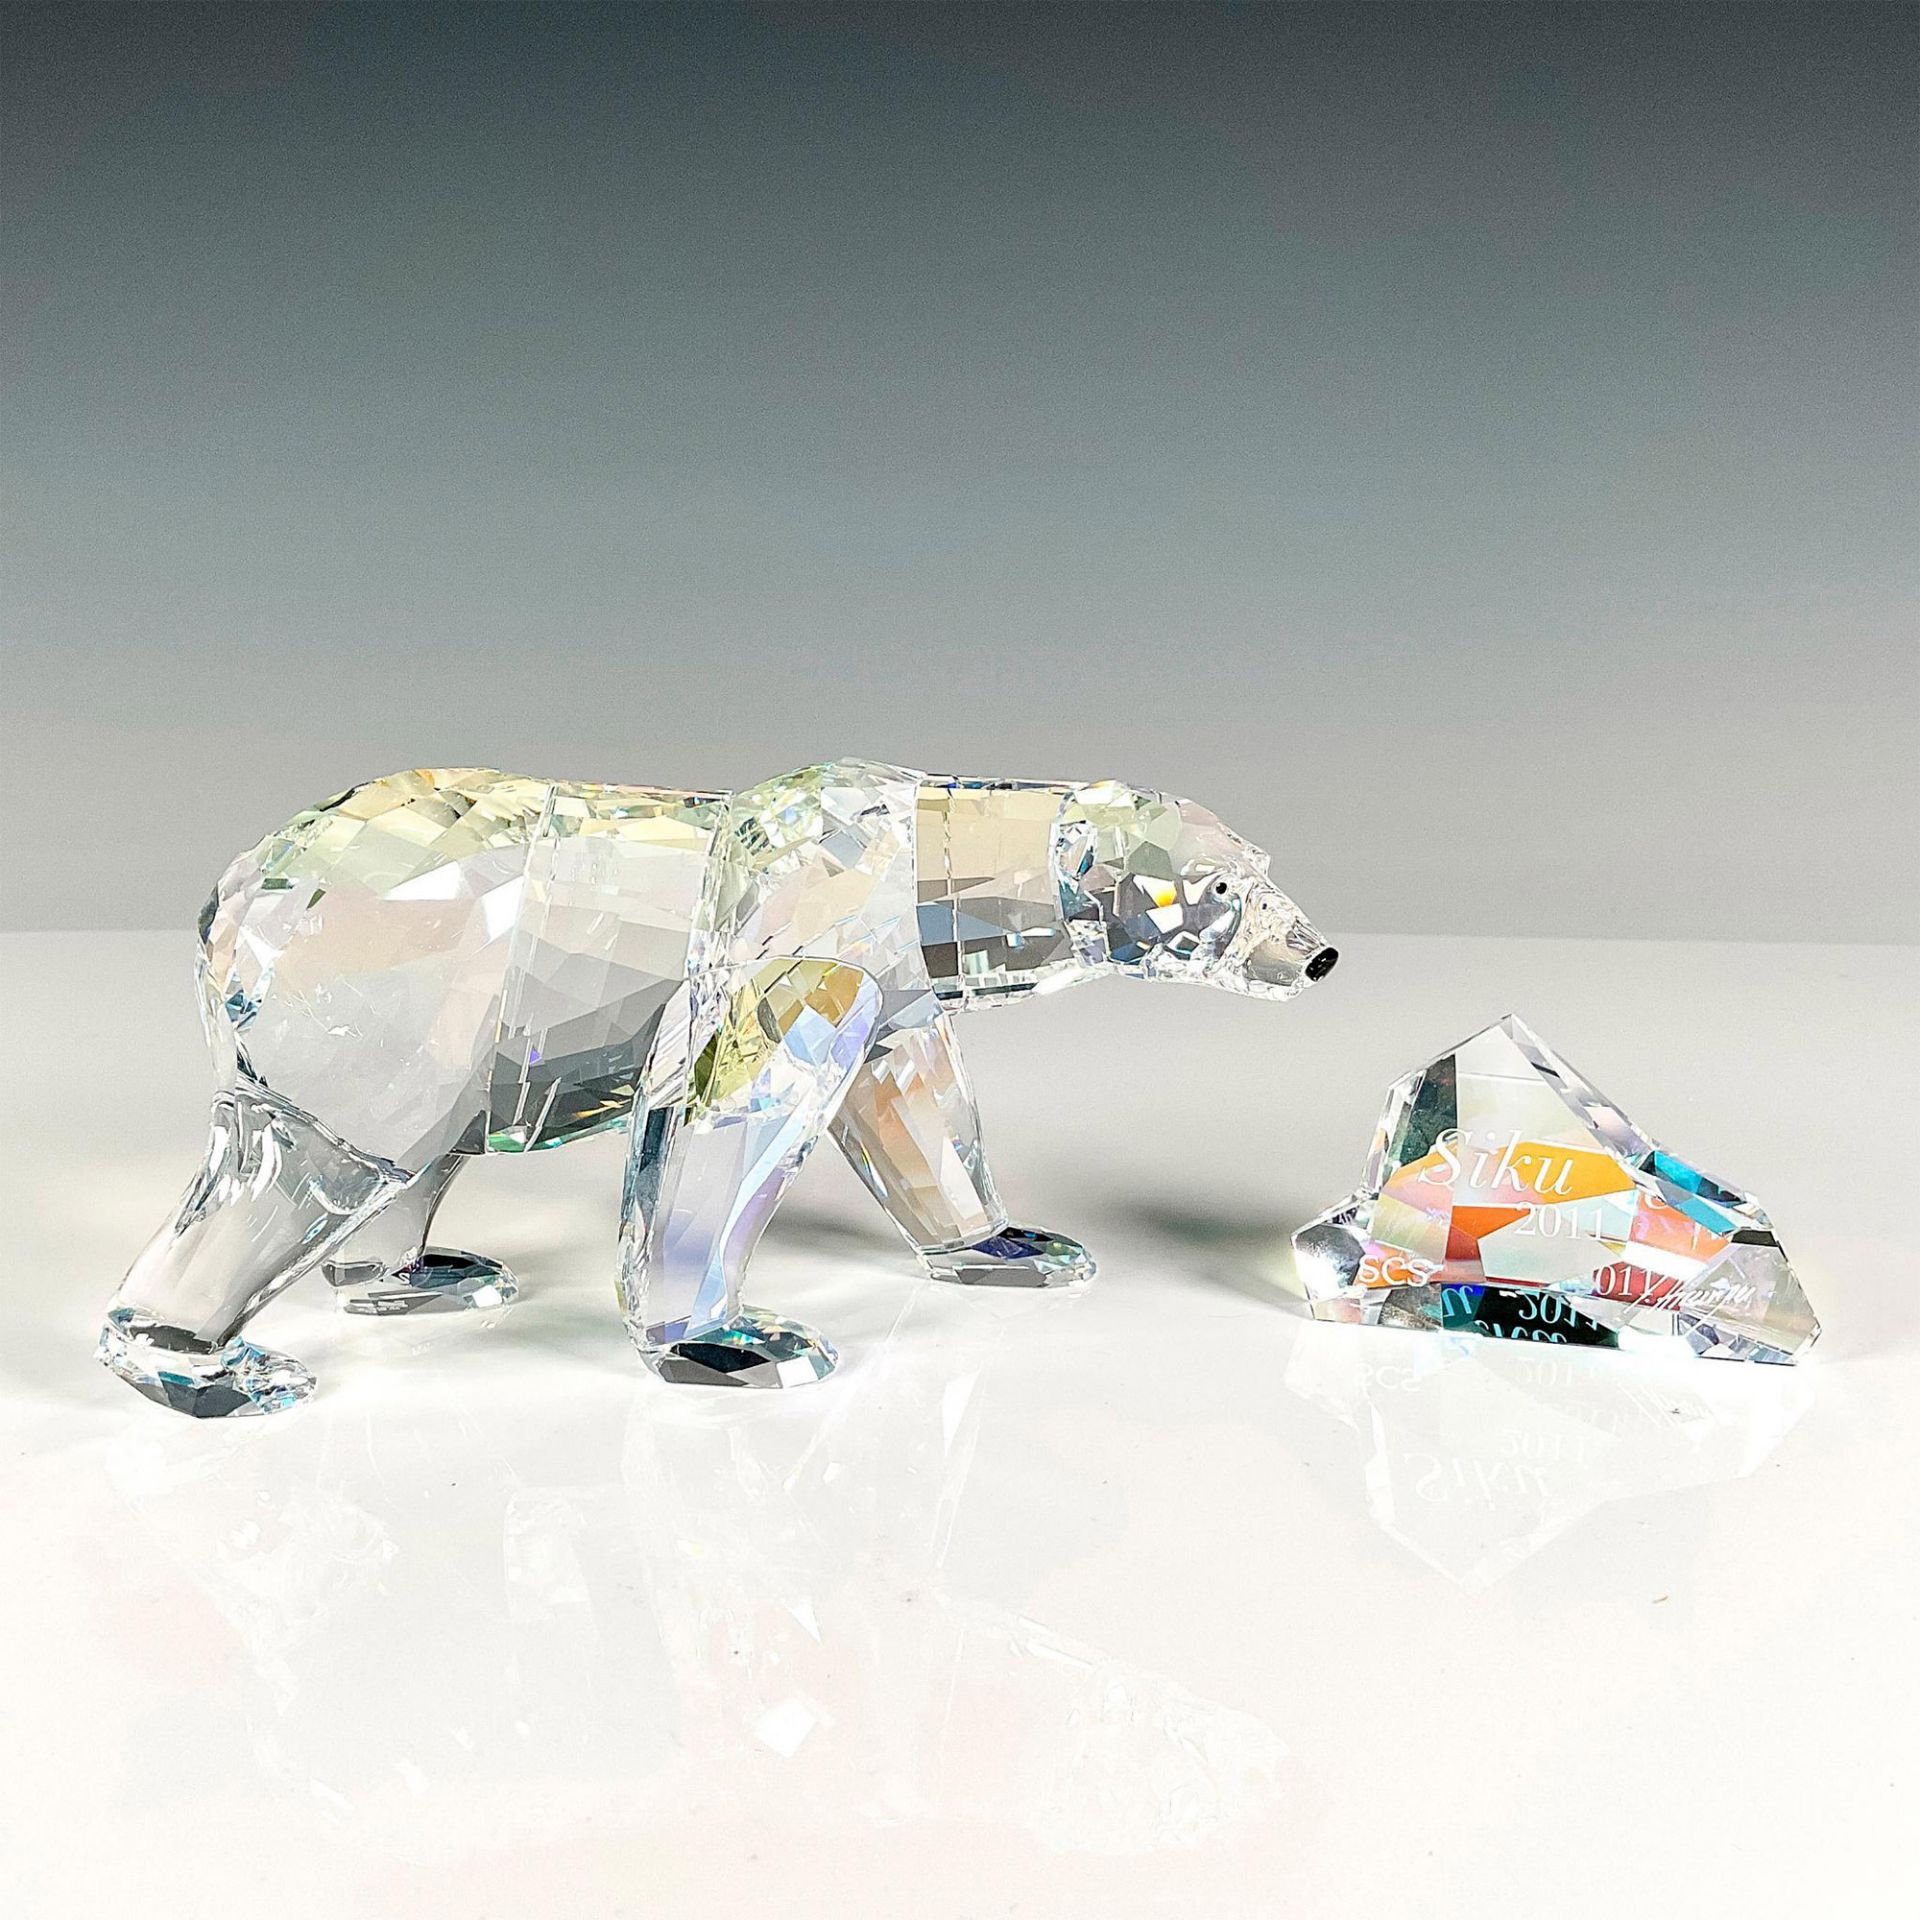 2pc Swarovski Crystal Figurine Siku Polar Bear with Plaque